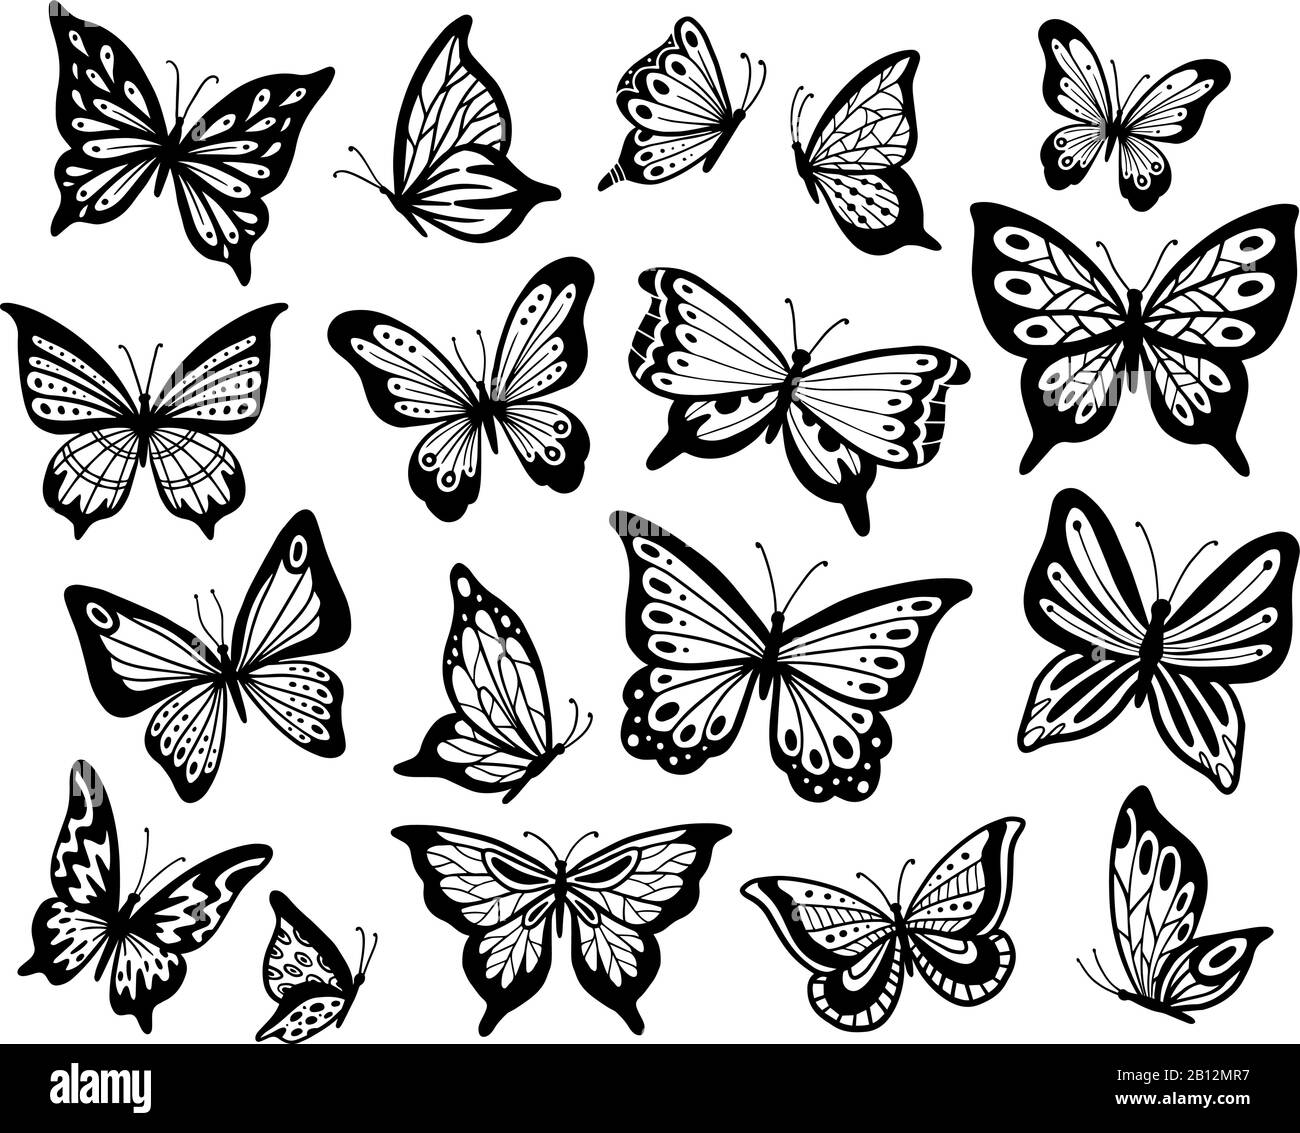 Schmetterlinge zeichnen. Schablonen-Schmetterling, Mottenflügel und fliegende Insekten isolierter Vektorgrafiksatz Stock Vektor